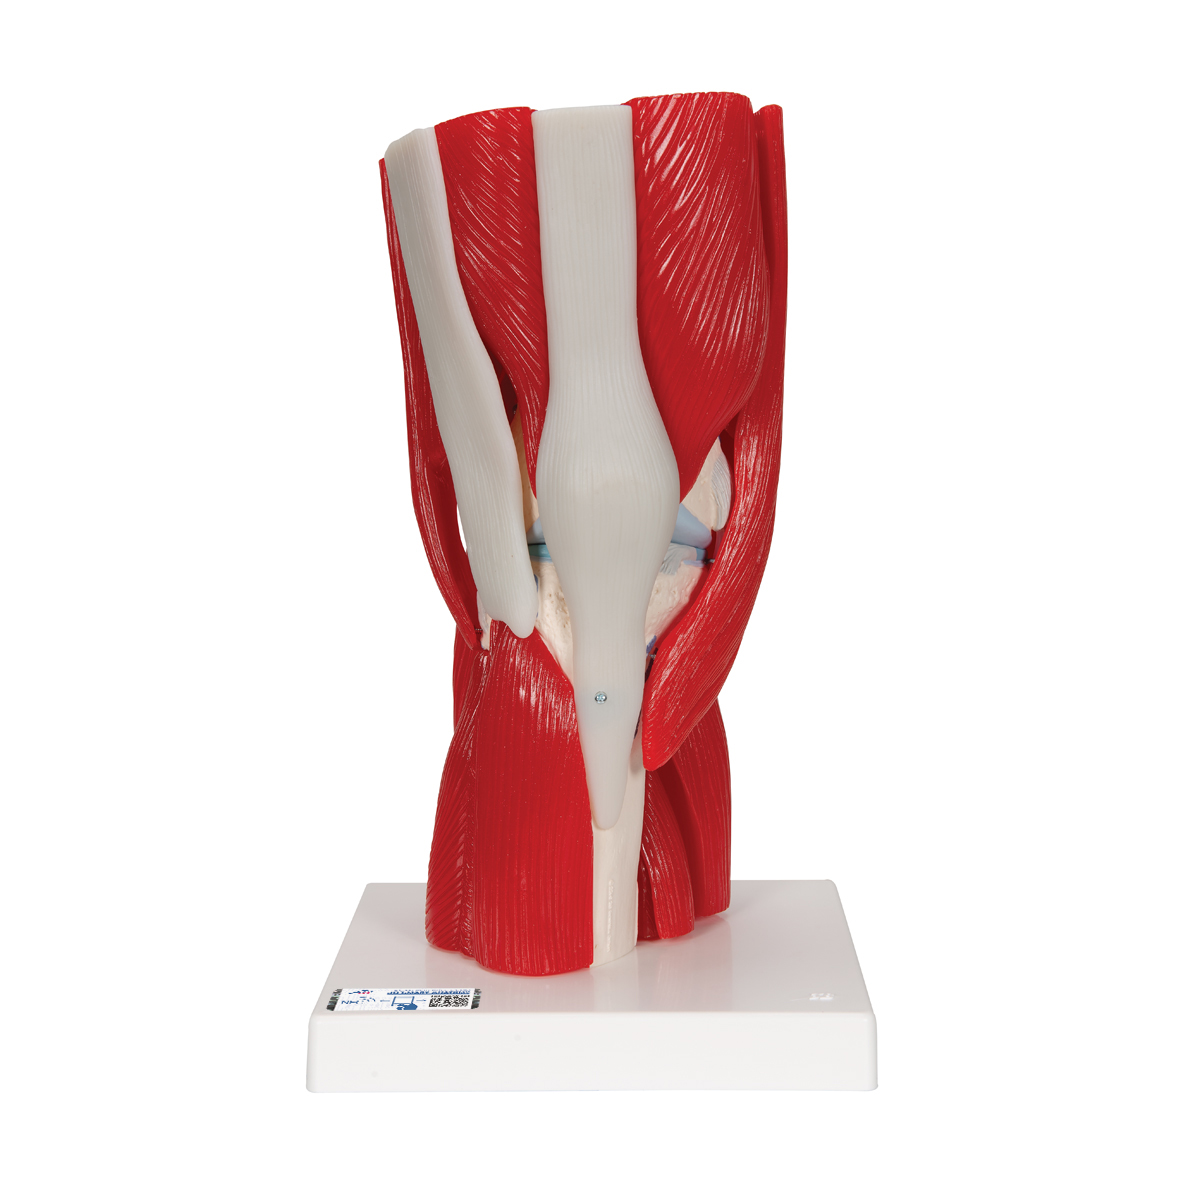 Kniegelenkmodell mit abnehmbaren Muskeln, 12-teilig - 3B Smart Anatomy, Bestellnummer 1000178, A882, 3B Scientific